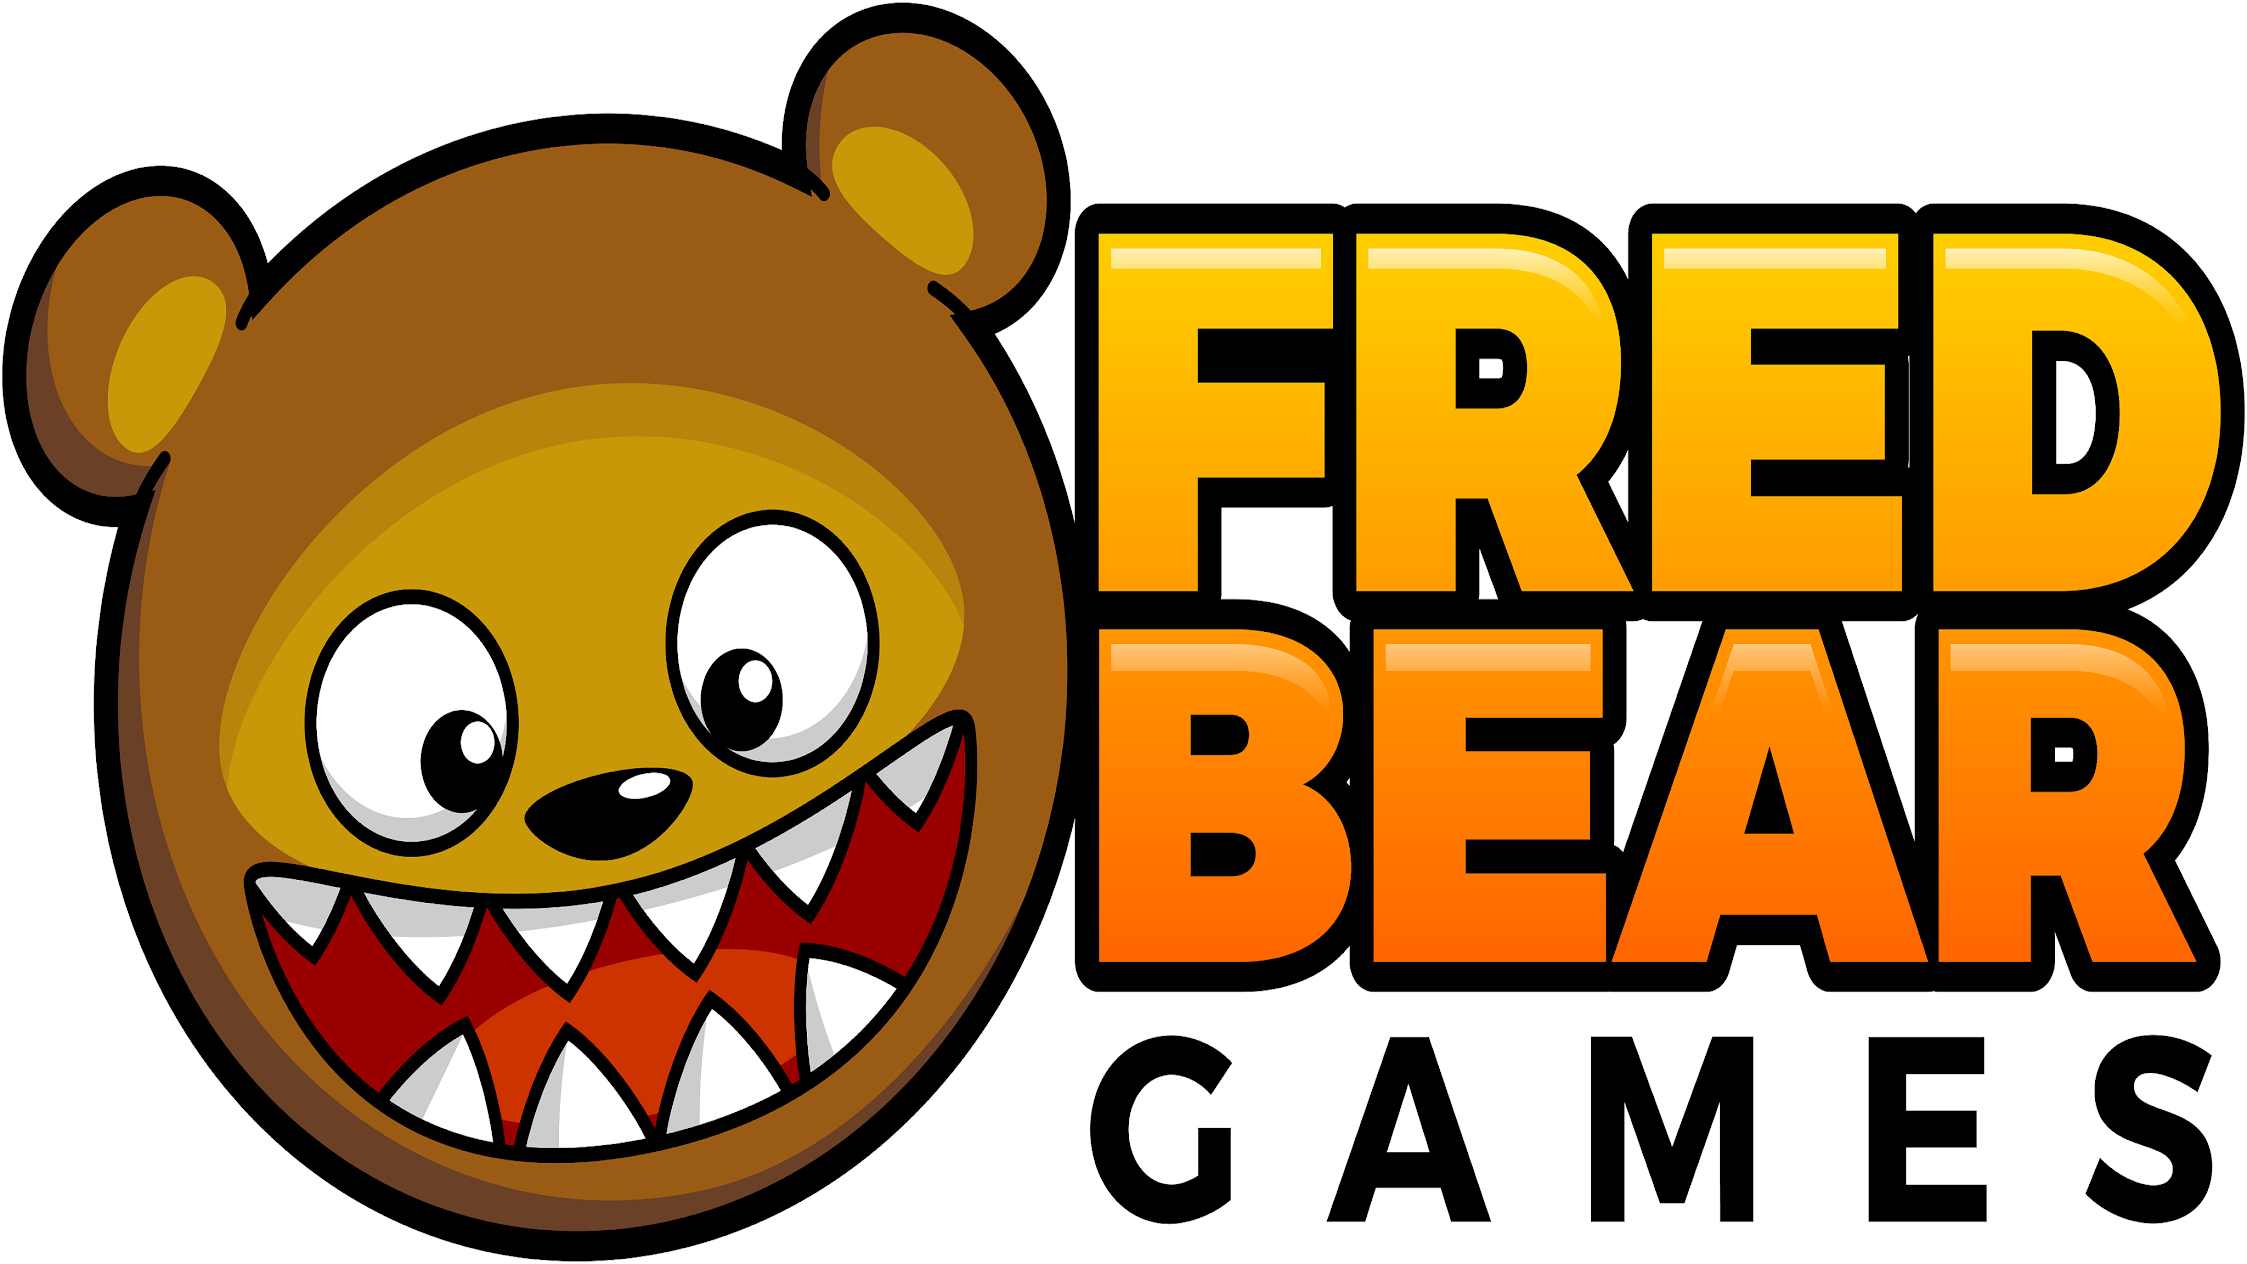 FredBear Games Ltd